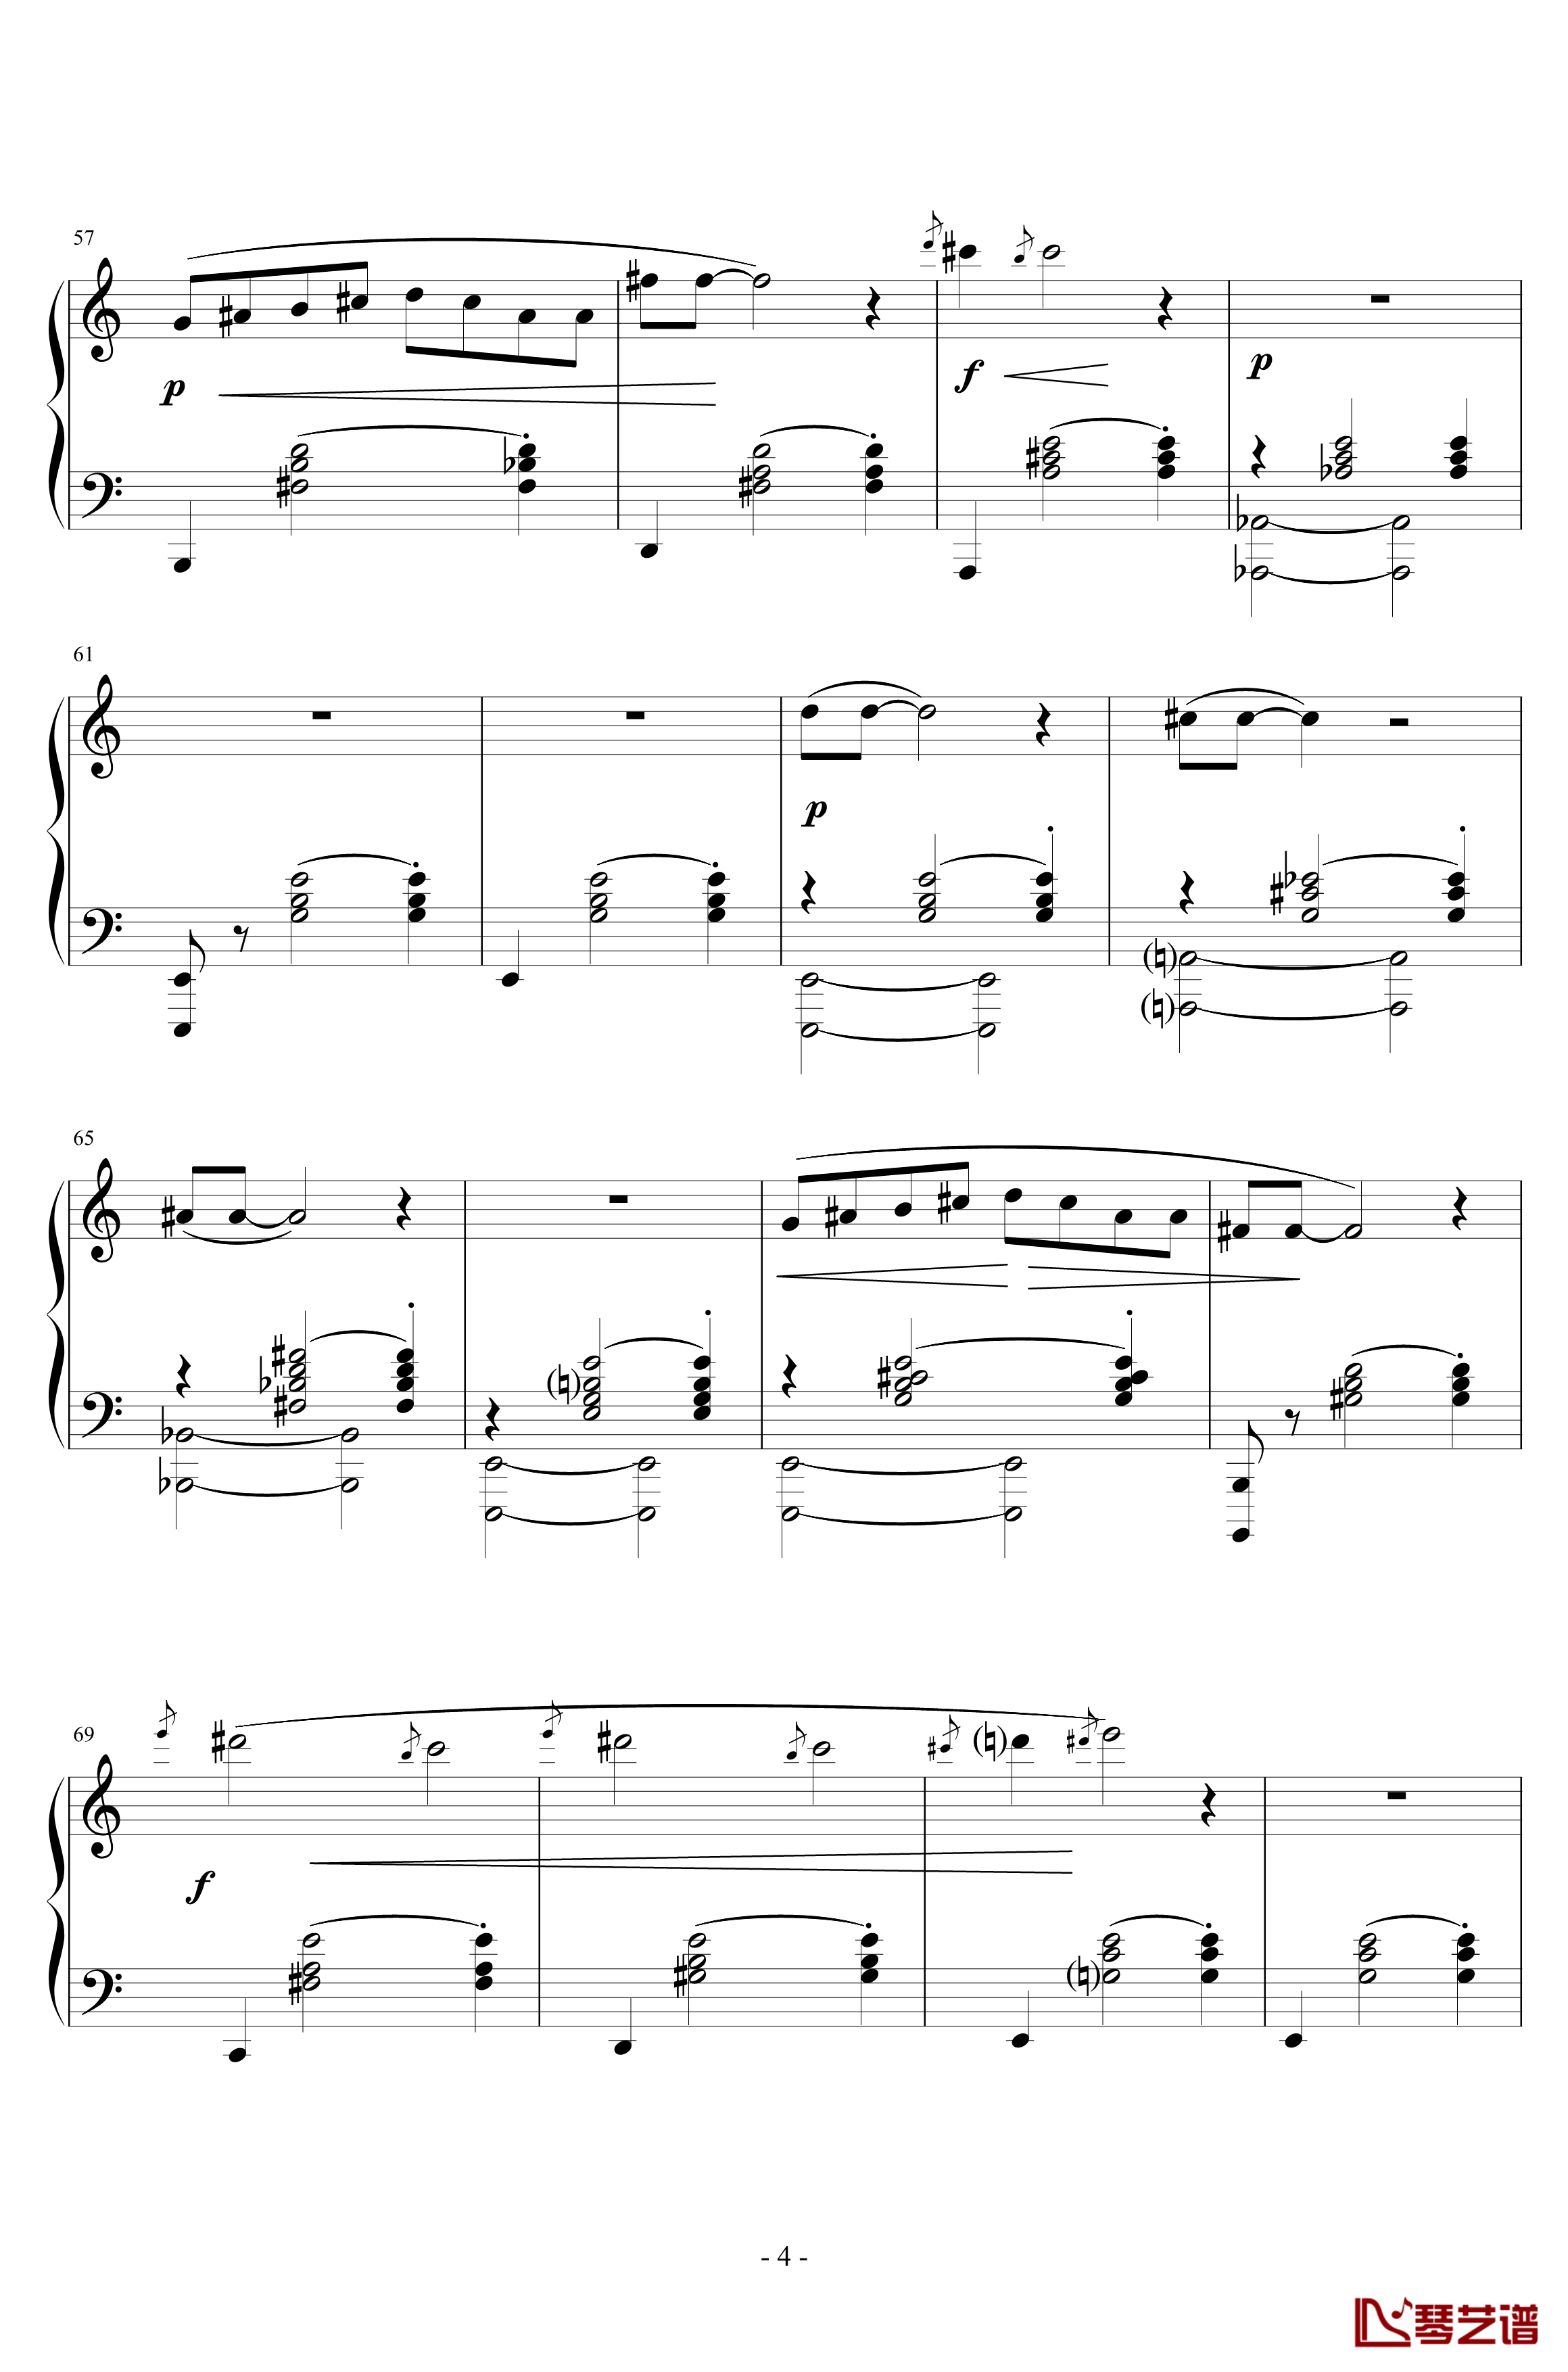 三首梨形小品钢琴谱-序奏-说话在先-沙拉萨蒂-萨蒂4